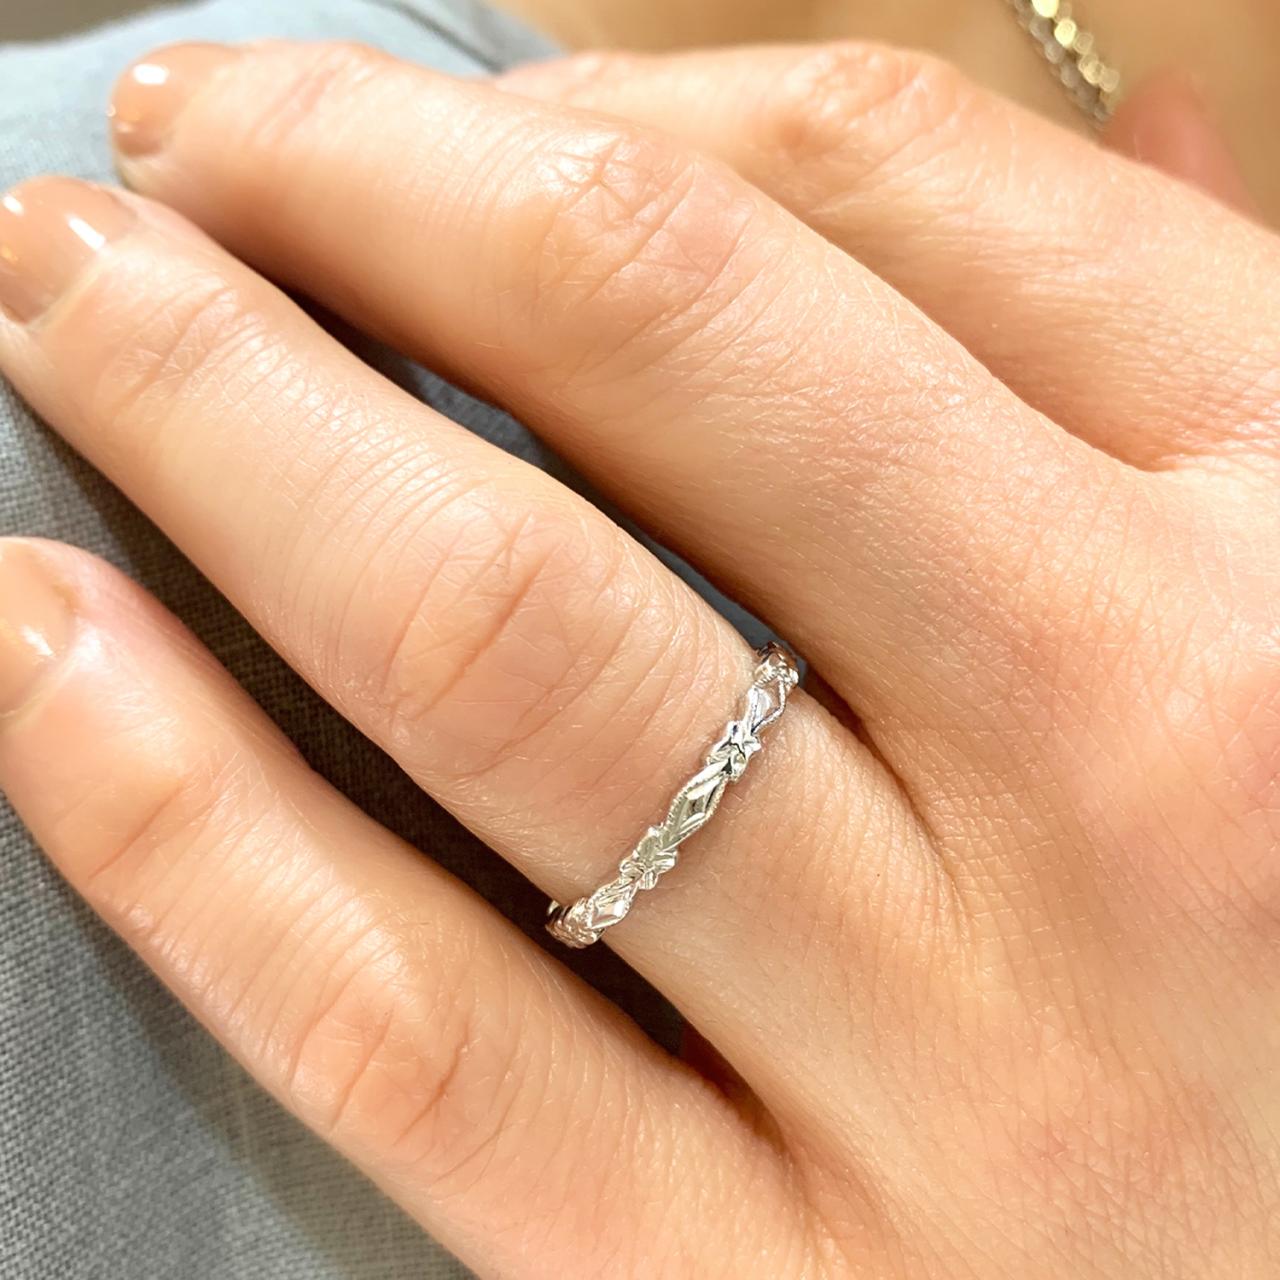 Facet edge, High-carat white gold wedding ring